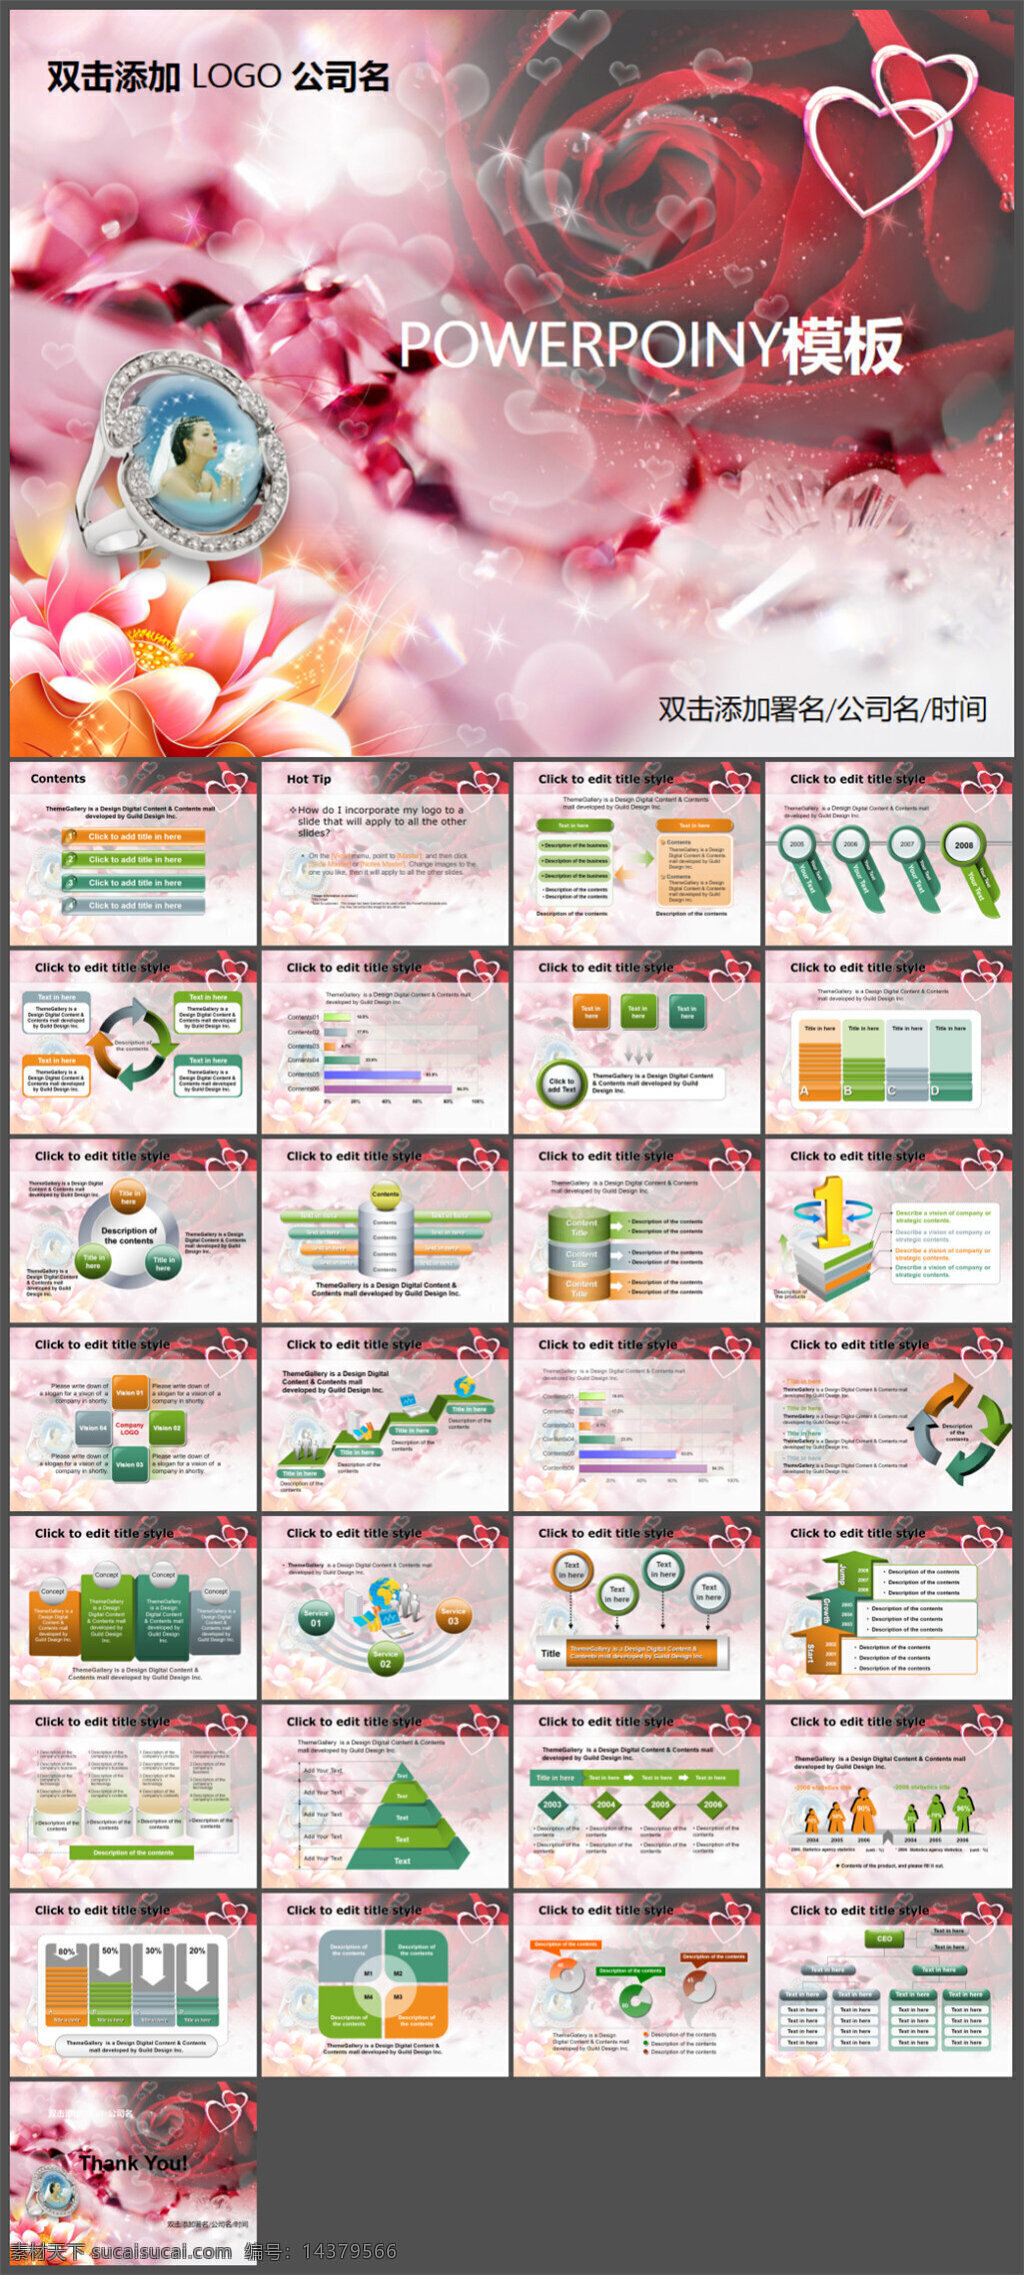 玫瑰 浪漫 婚庆 模版 模板 图表 制作 多媒体 企业 动态 pptx 白色